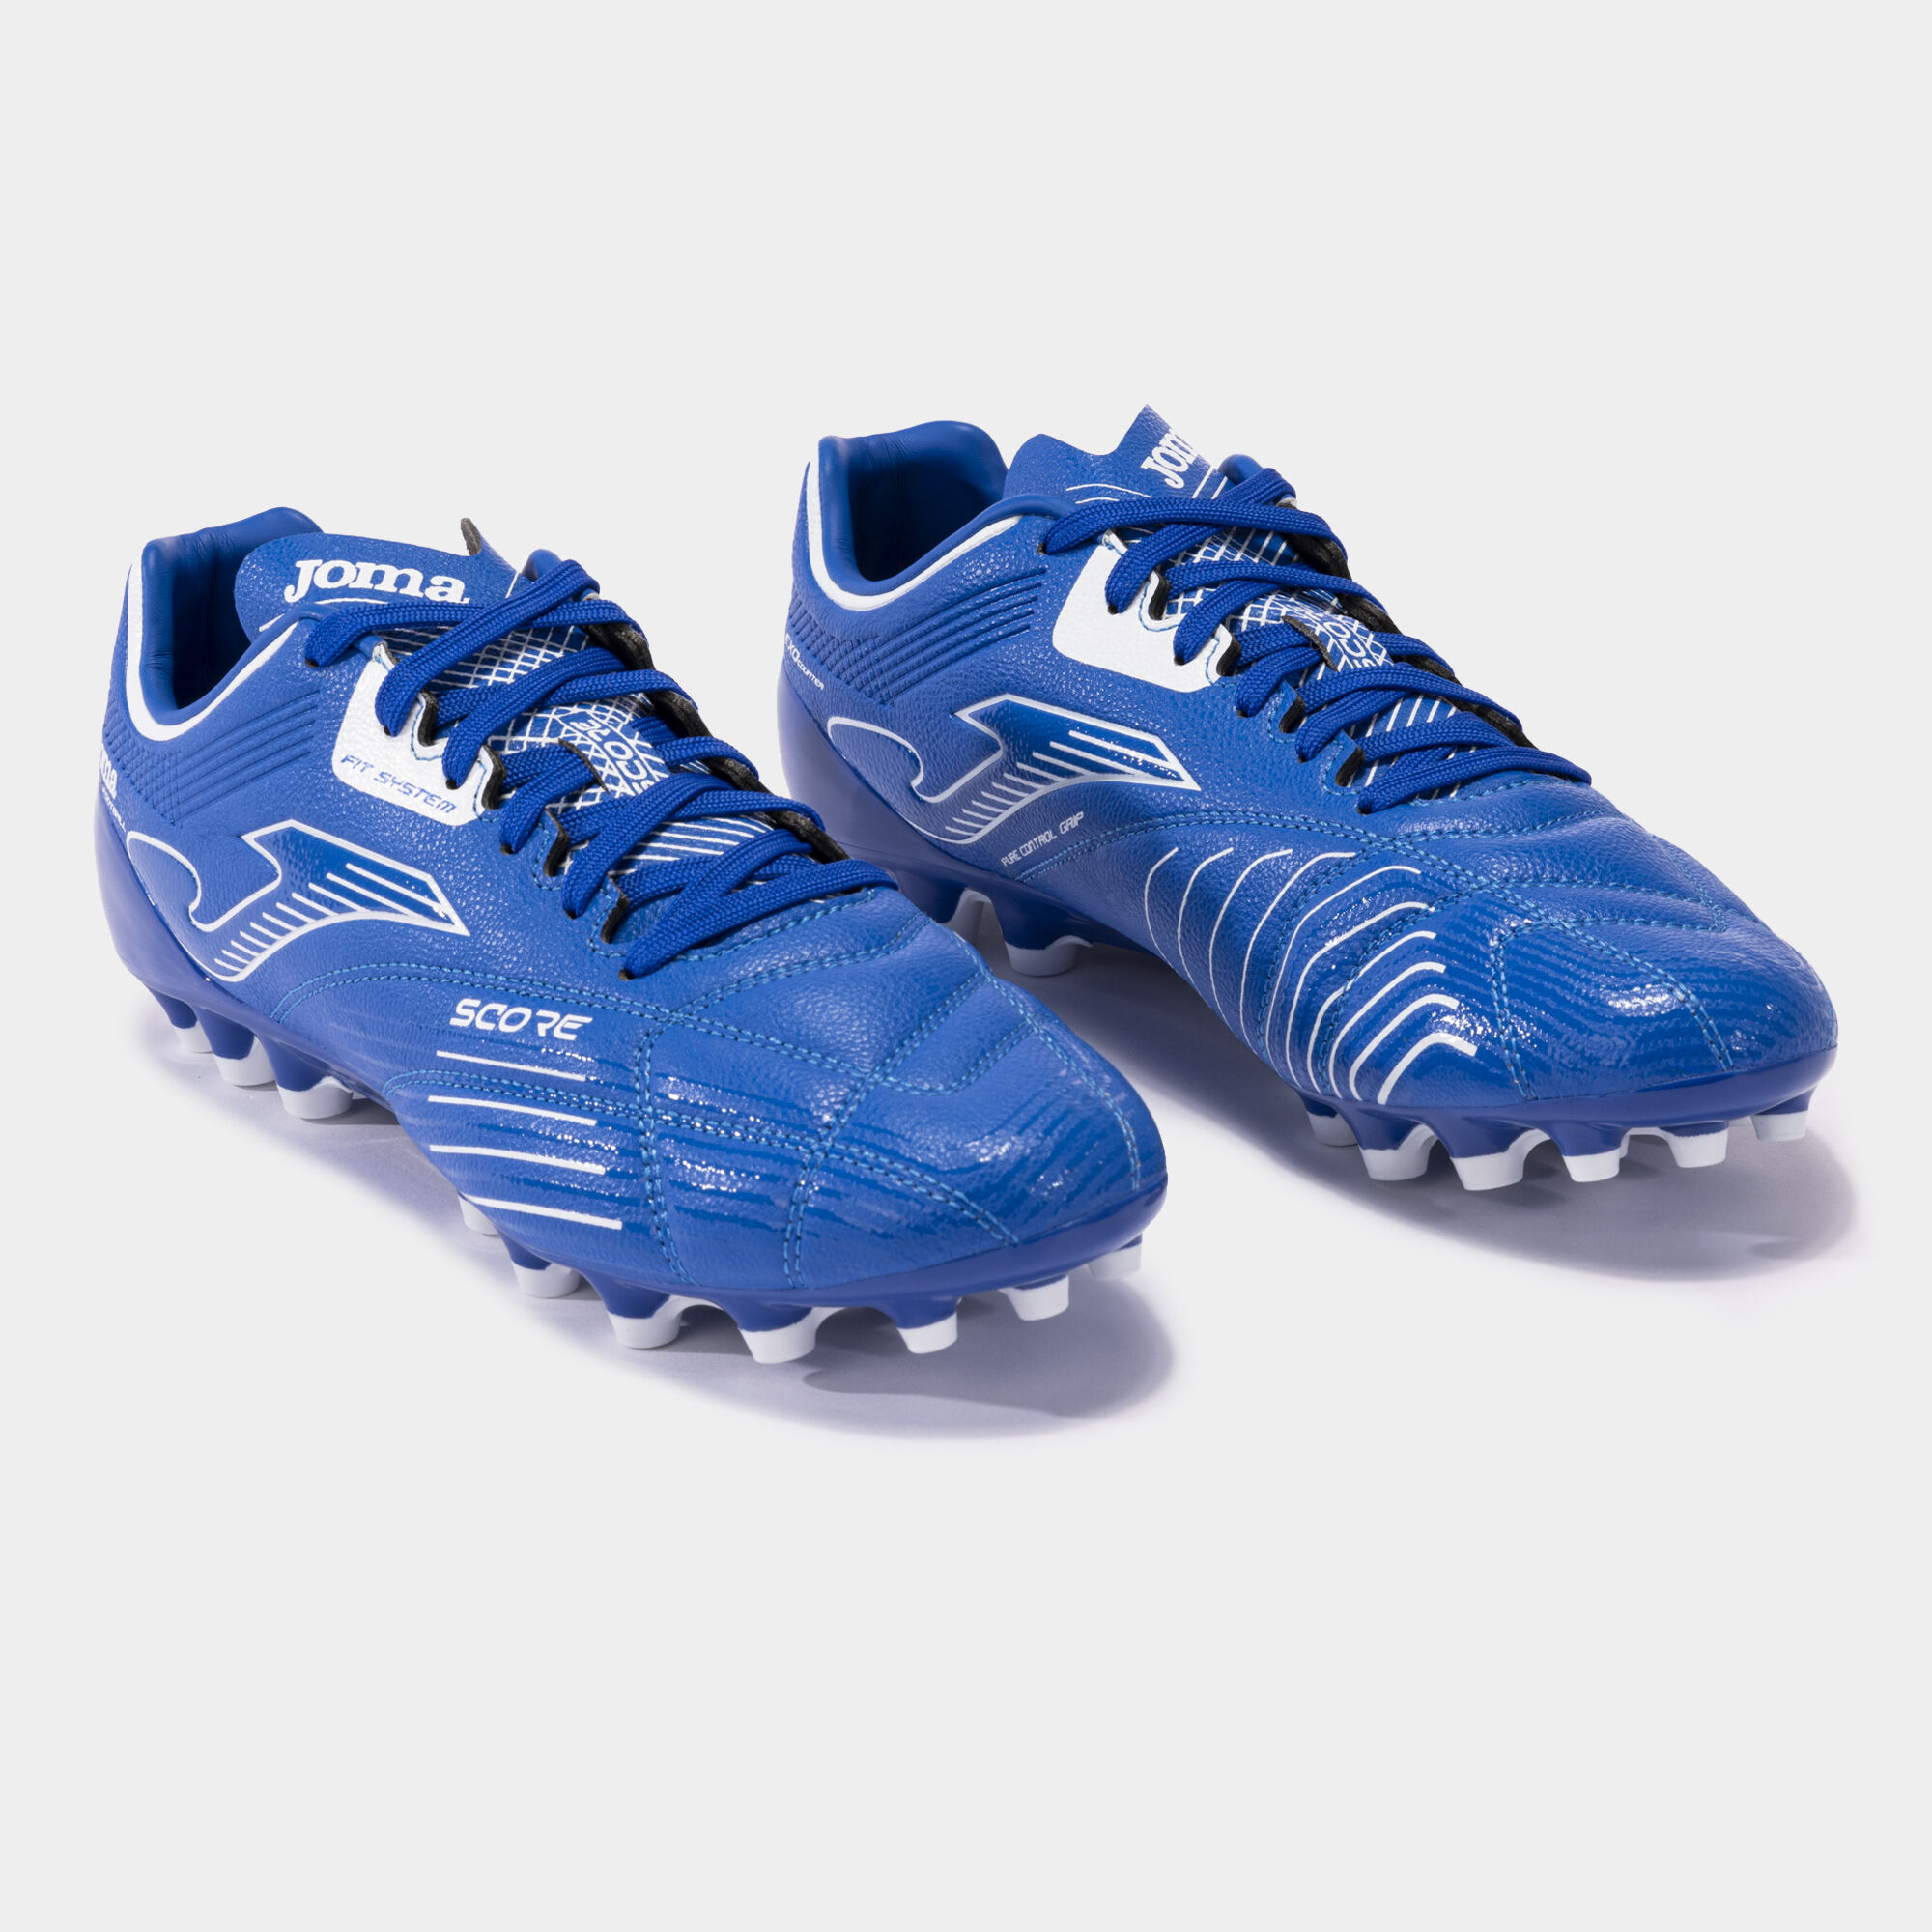 Buty piłkarskie Score 23 sztuczna trawa AG niebieski royal